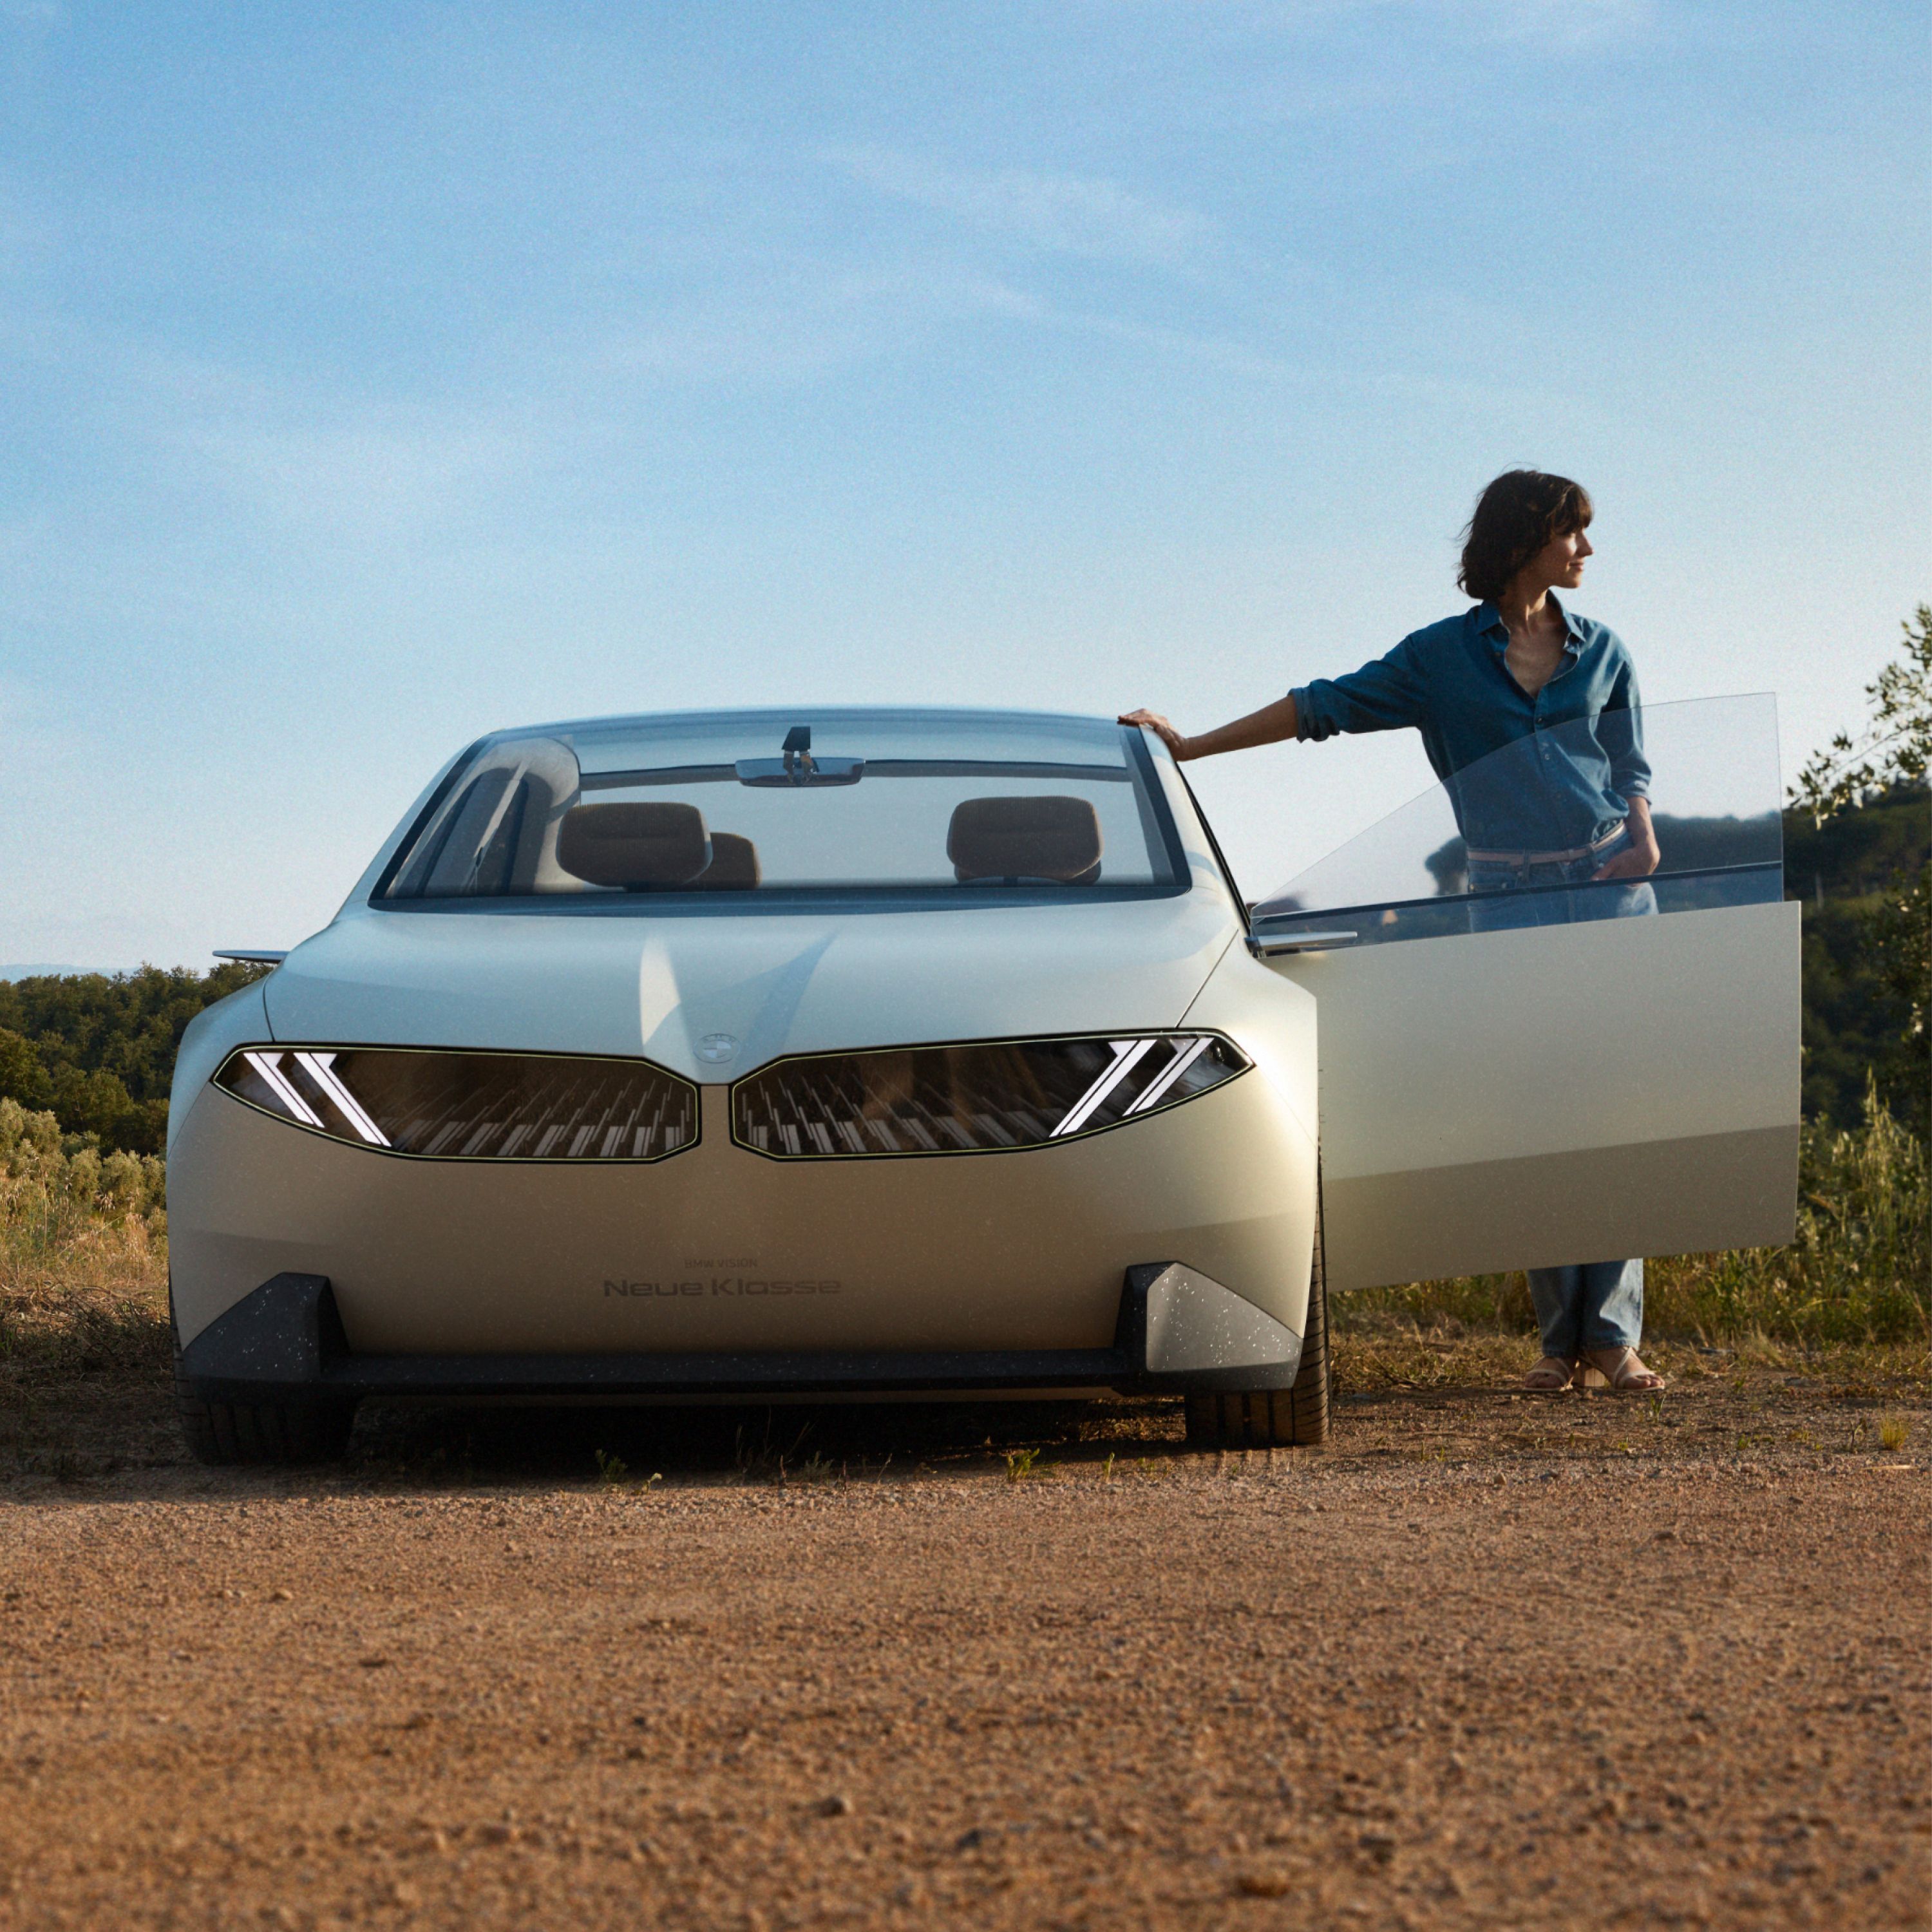 BMW Vision new class concept de véhicule 2023, extérieur, vue de face, garée dans le désert, porte ouverte, avec femme